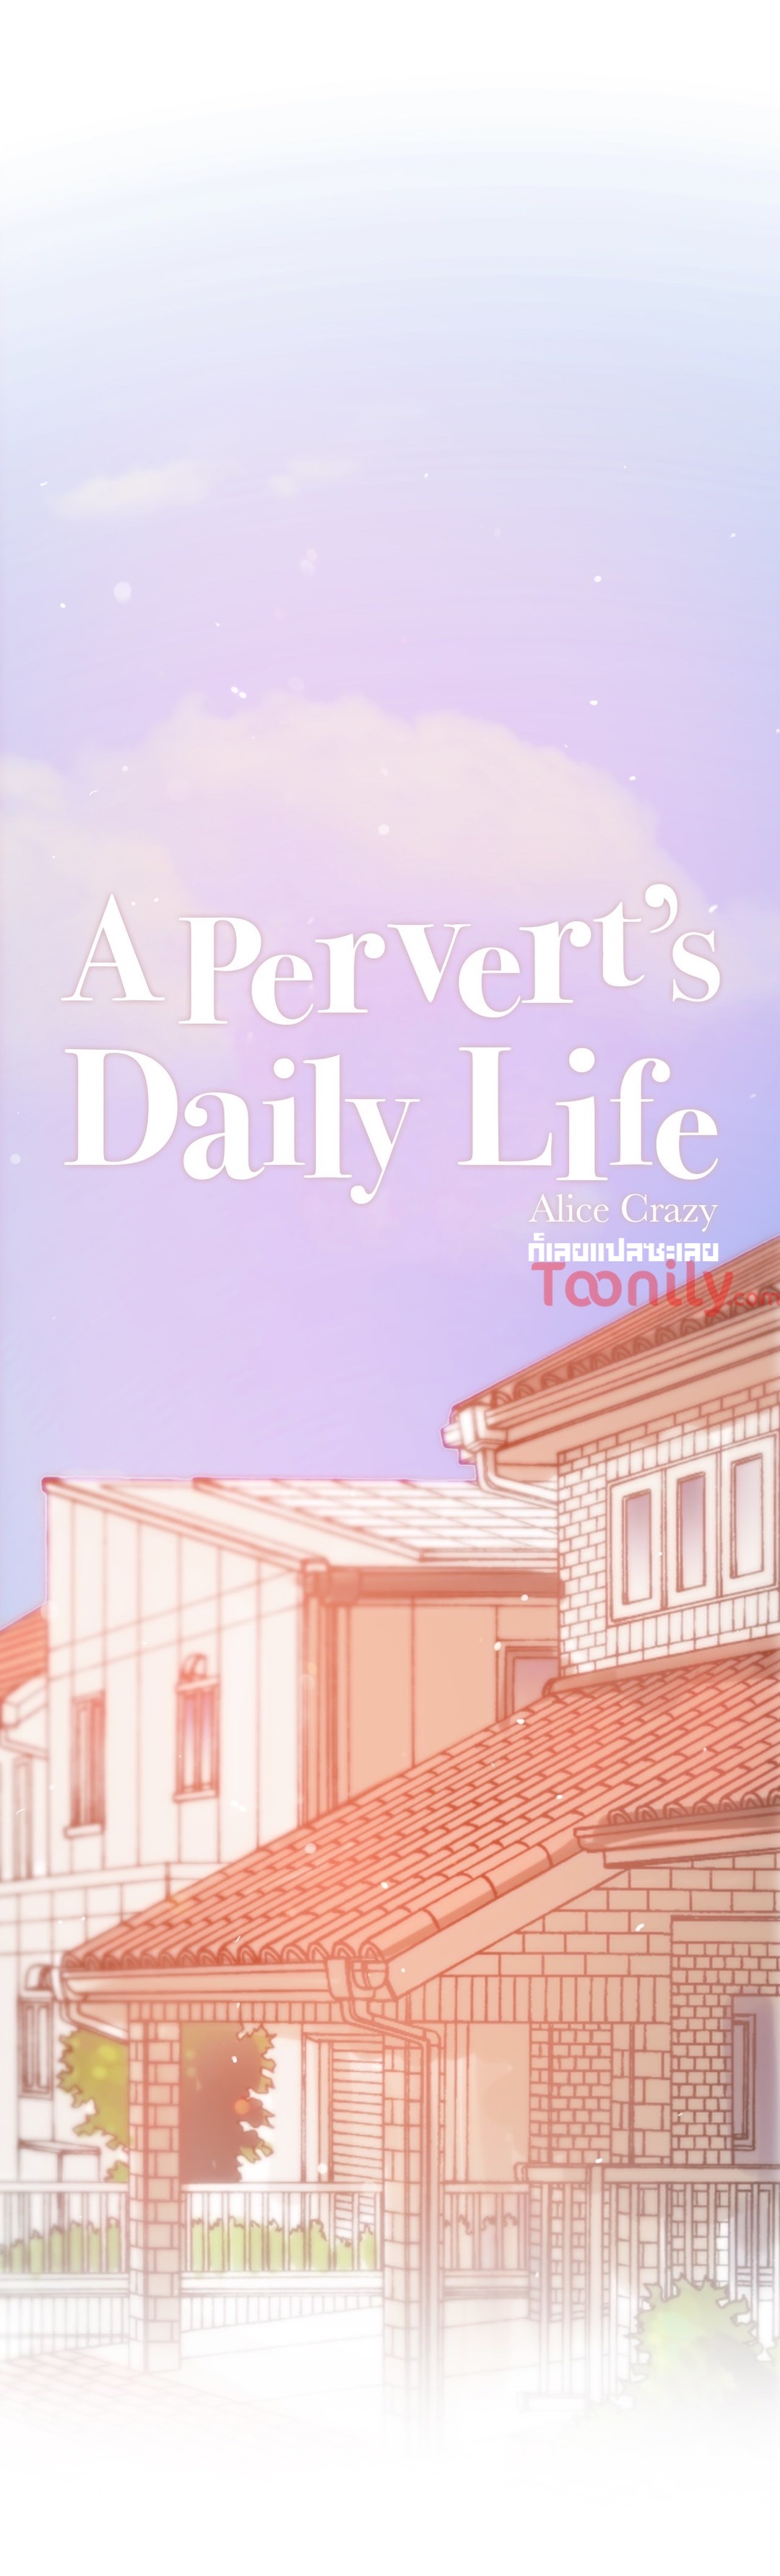 A Pervertรขโฌโขs Daily Life 65 03